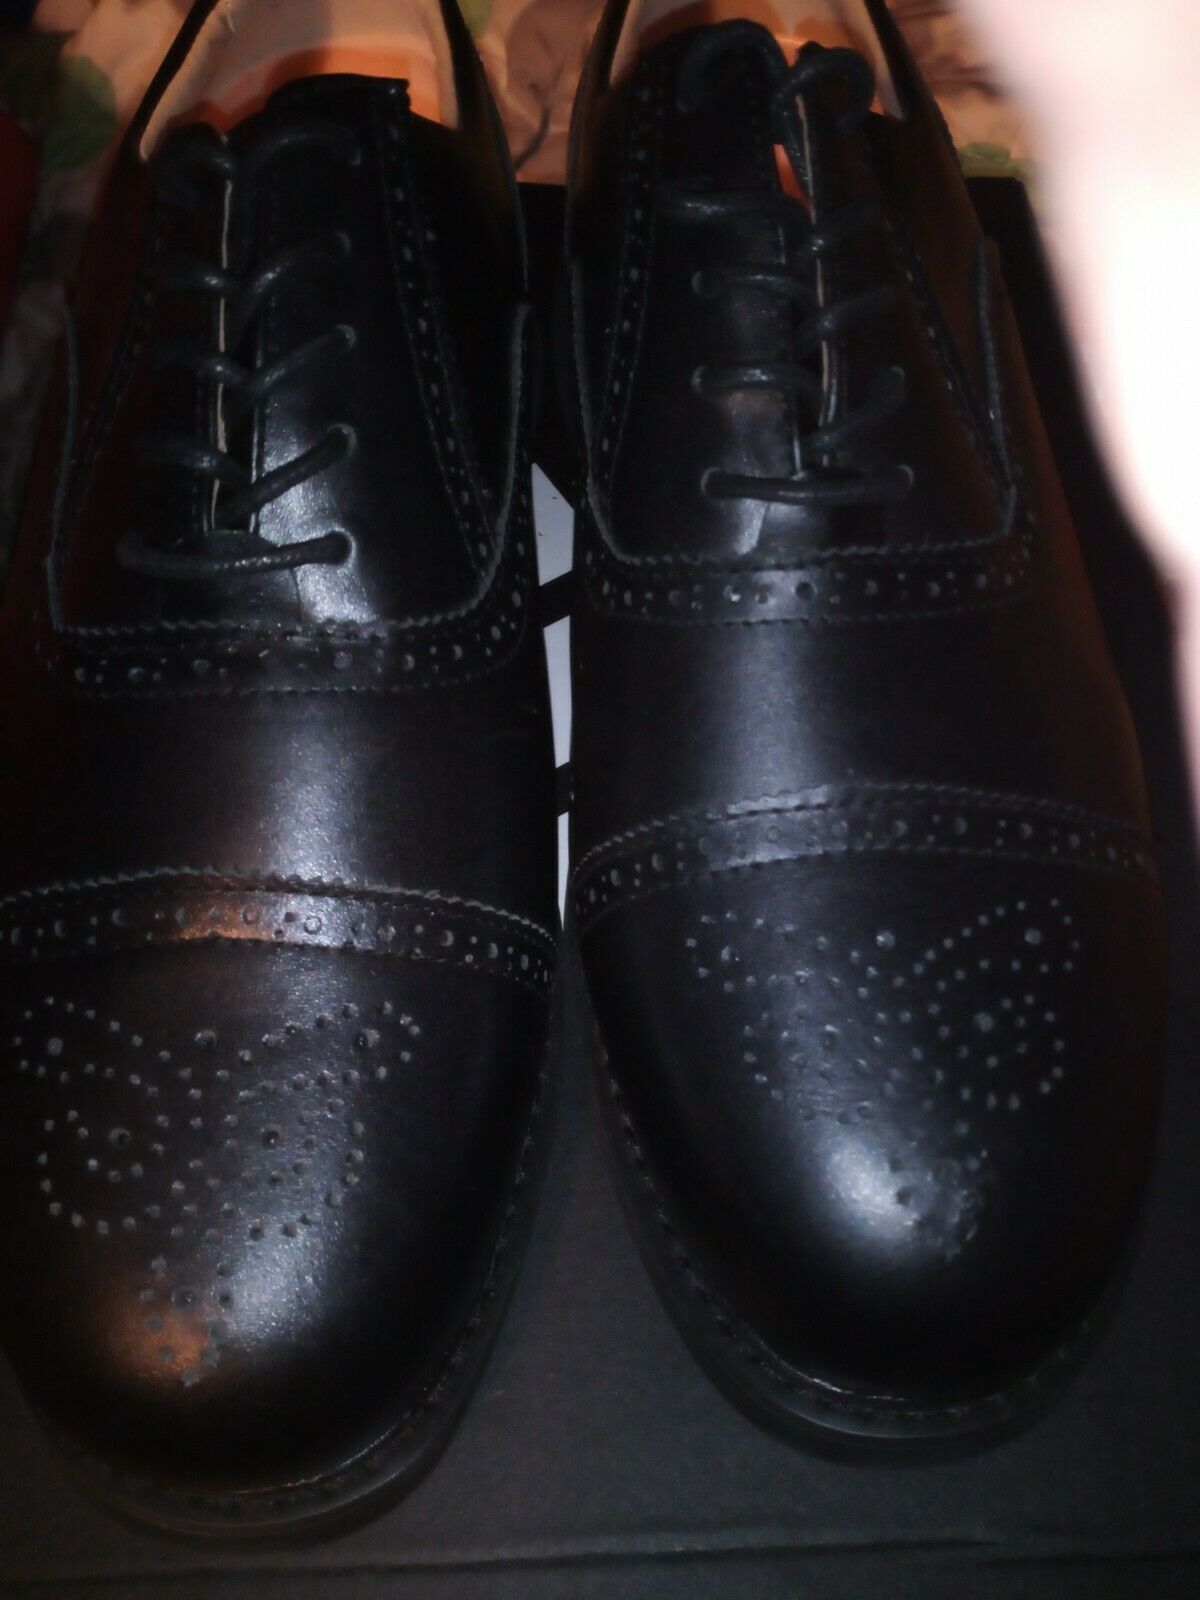 Apis Mt.Emey Men's dress Shoes size 12 6E wide great comfort mint condition new